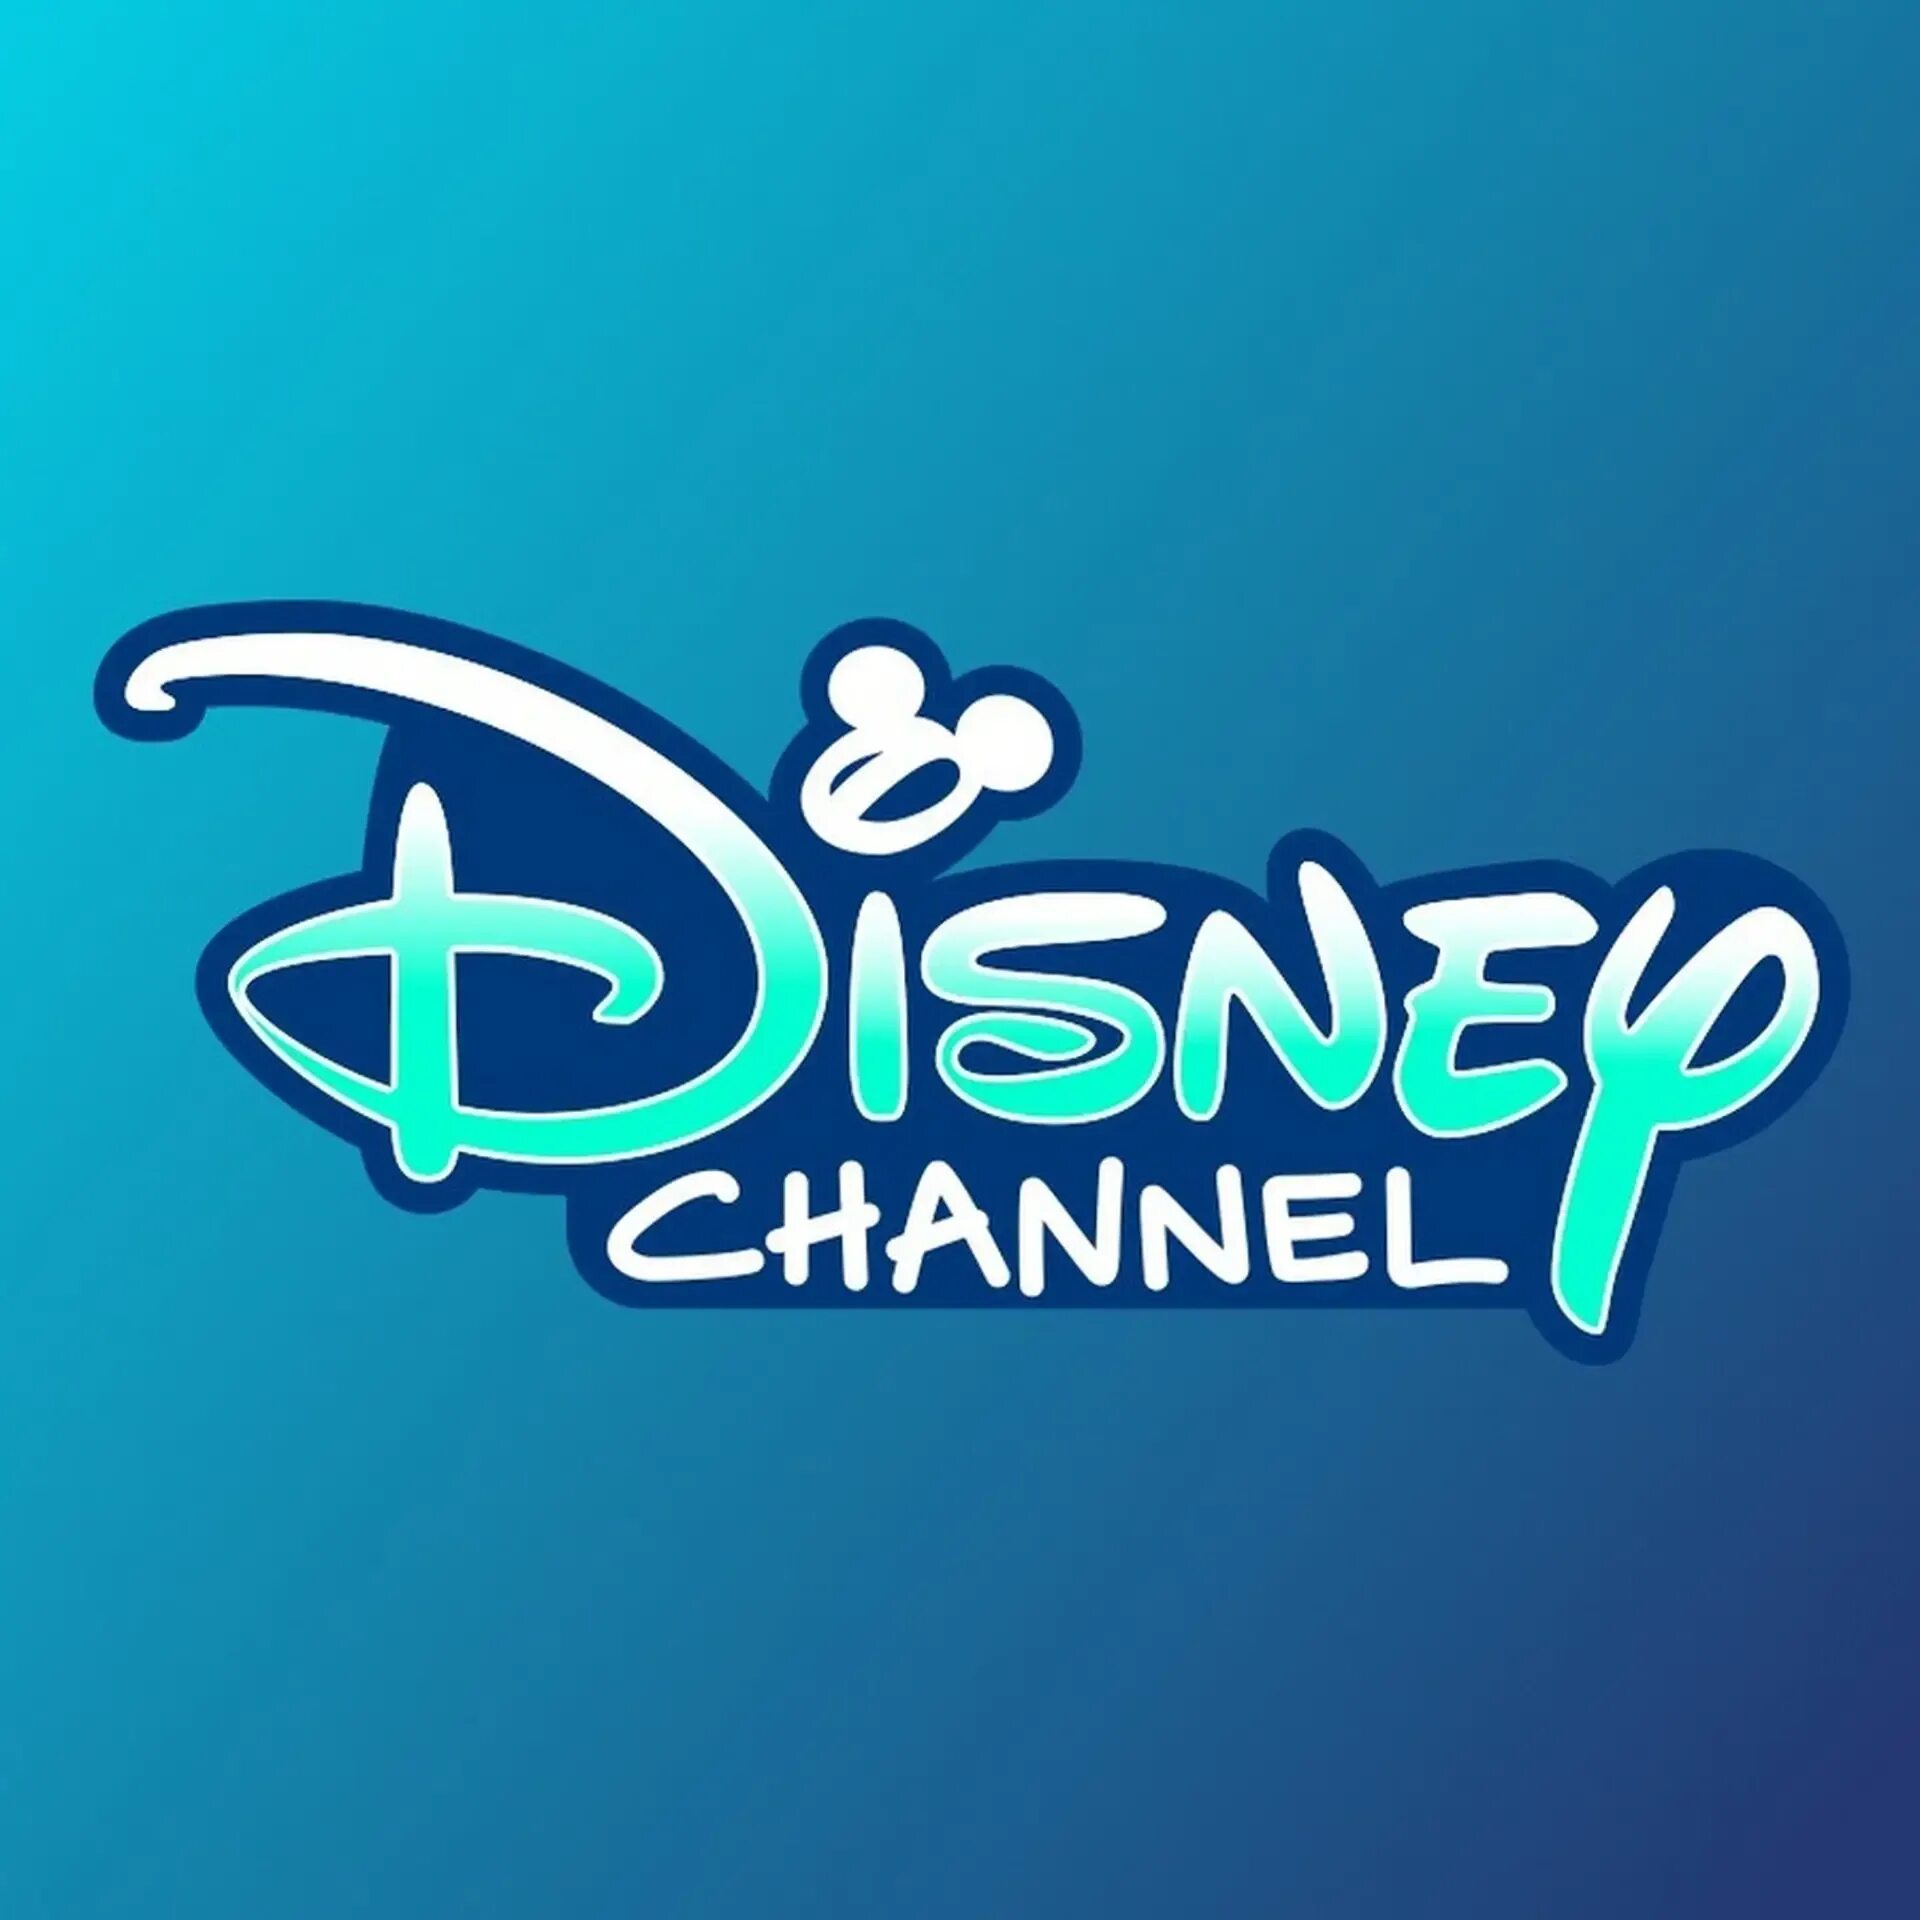 Канал Дисней. Дисней логотип. Дисней значок канала. Логотип телеканала канал Disney.